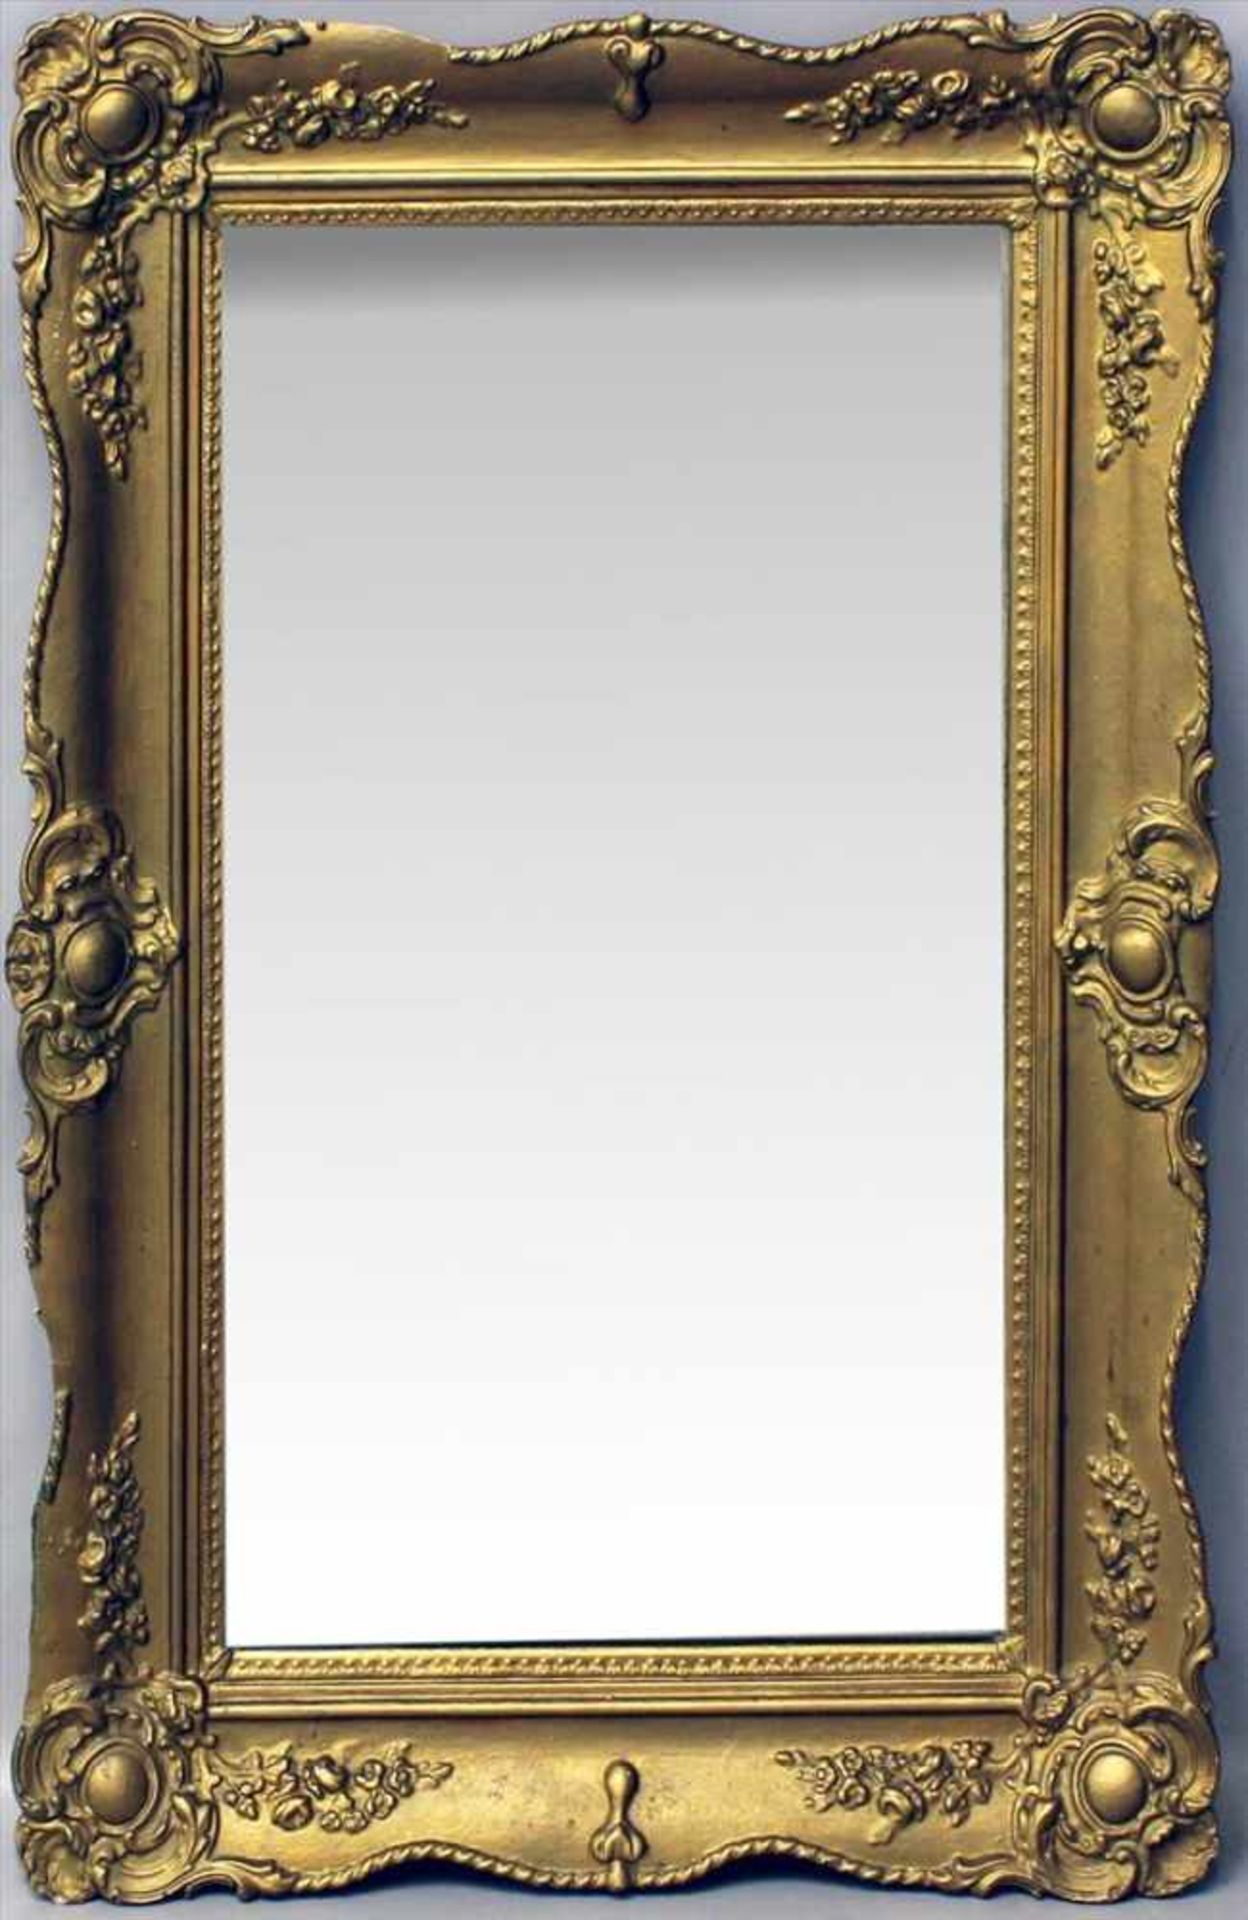 Wandspiegel mit Goldstuckrahmen.Holz und Stuck, goldgefasst (Fassung erneuert), altes Spiegelglas.